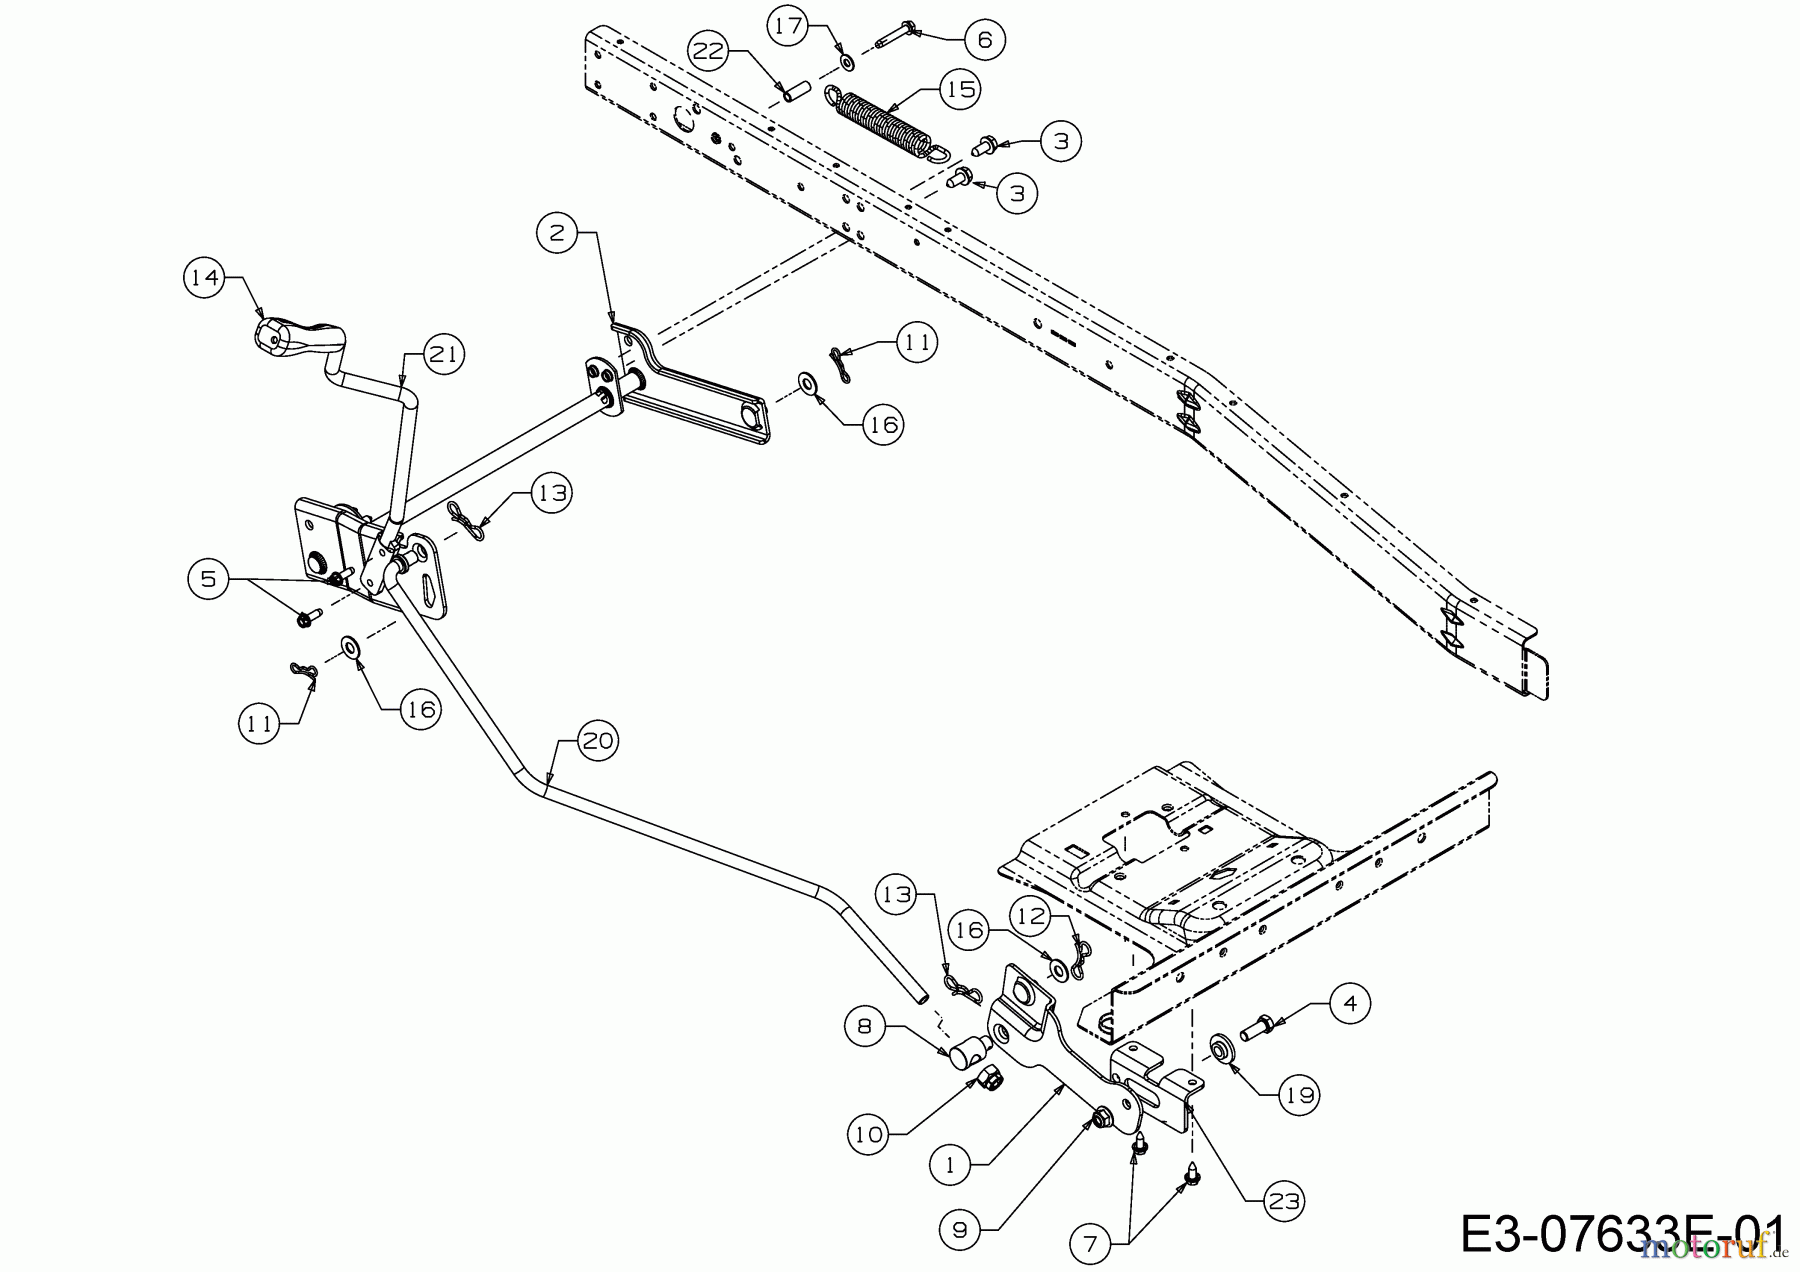  WOLF-Garten Expert Rasentraktoren Expert Scooter Pro Hydro 13A221HD650  (2016) Mähwerksaushebung